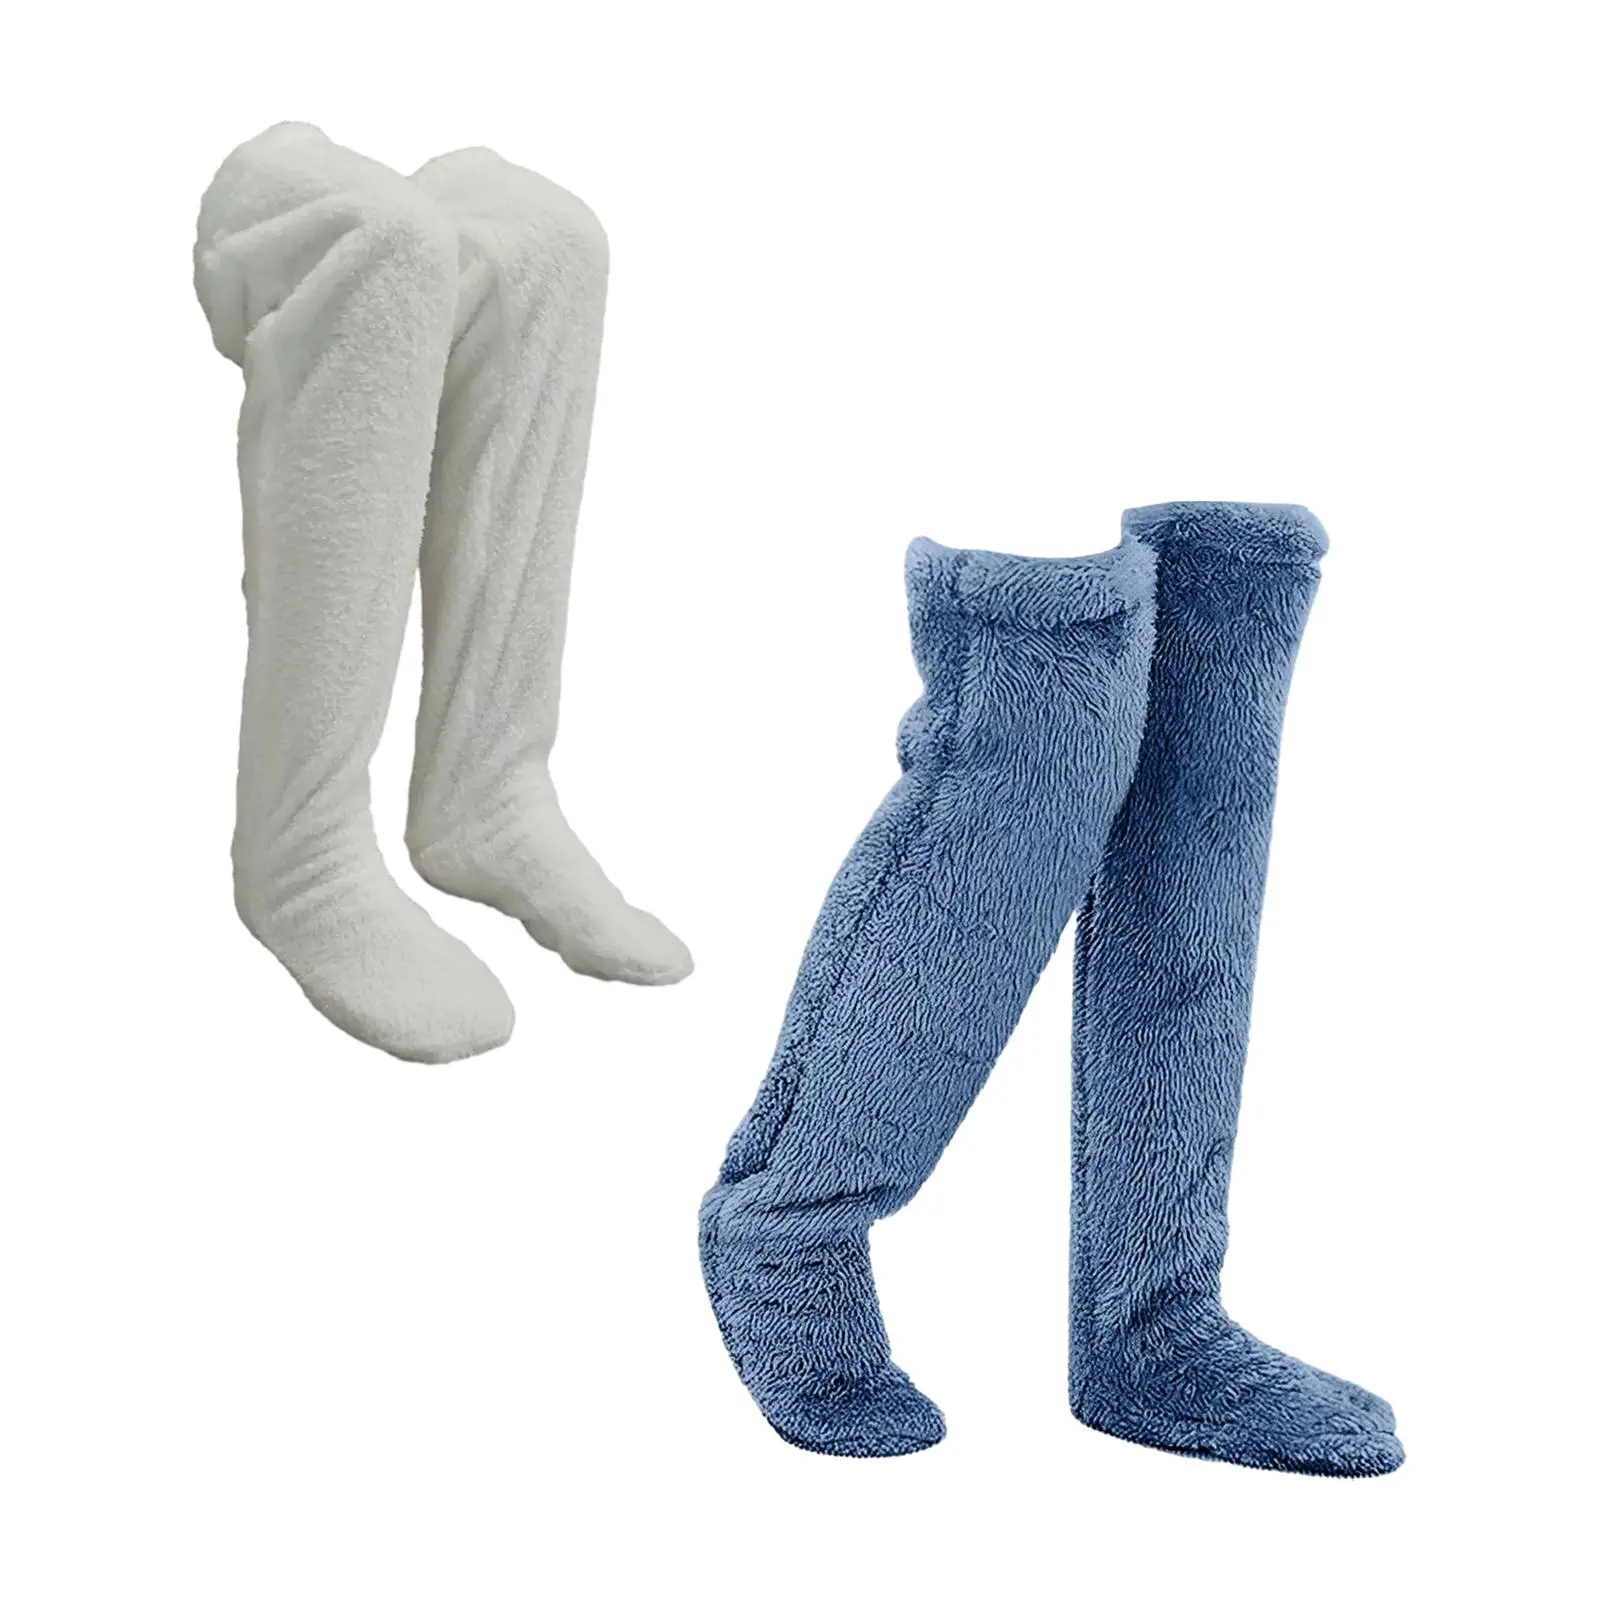 Thigh High Socks Plush Leg Warmers Protector Knee Long Tube Stockings Slipper Stockings over Knee High Fuzzy Socks for Dorm